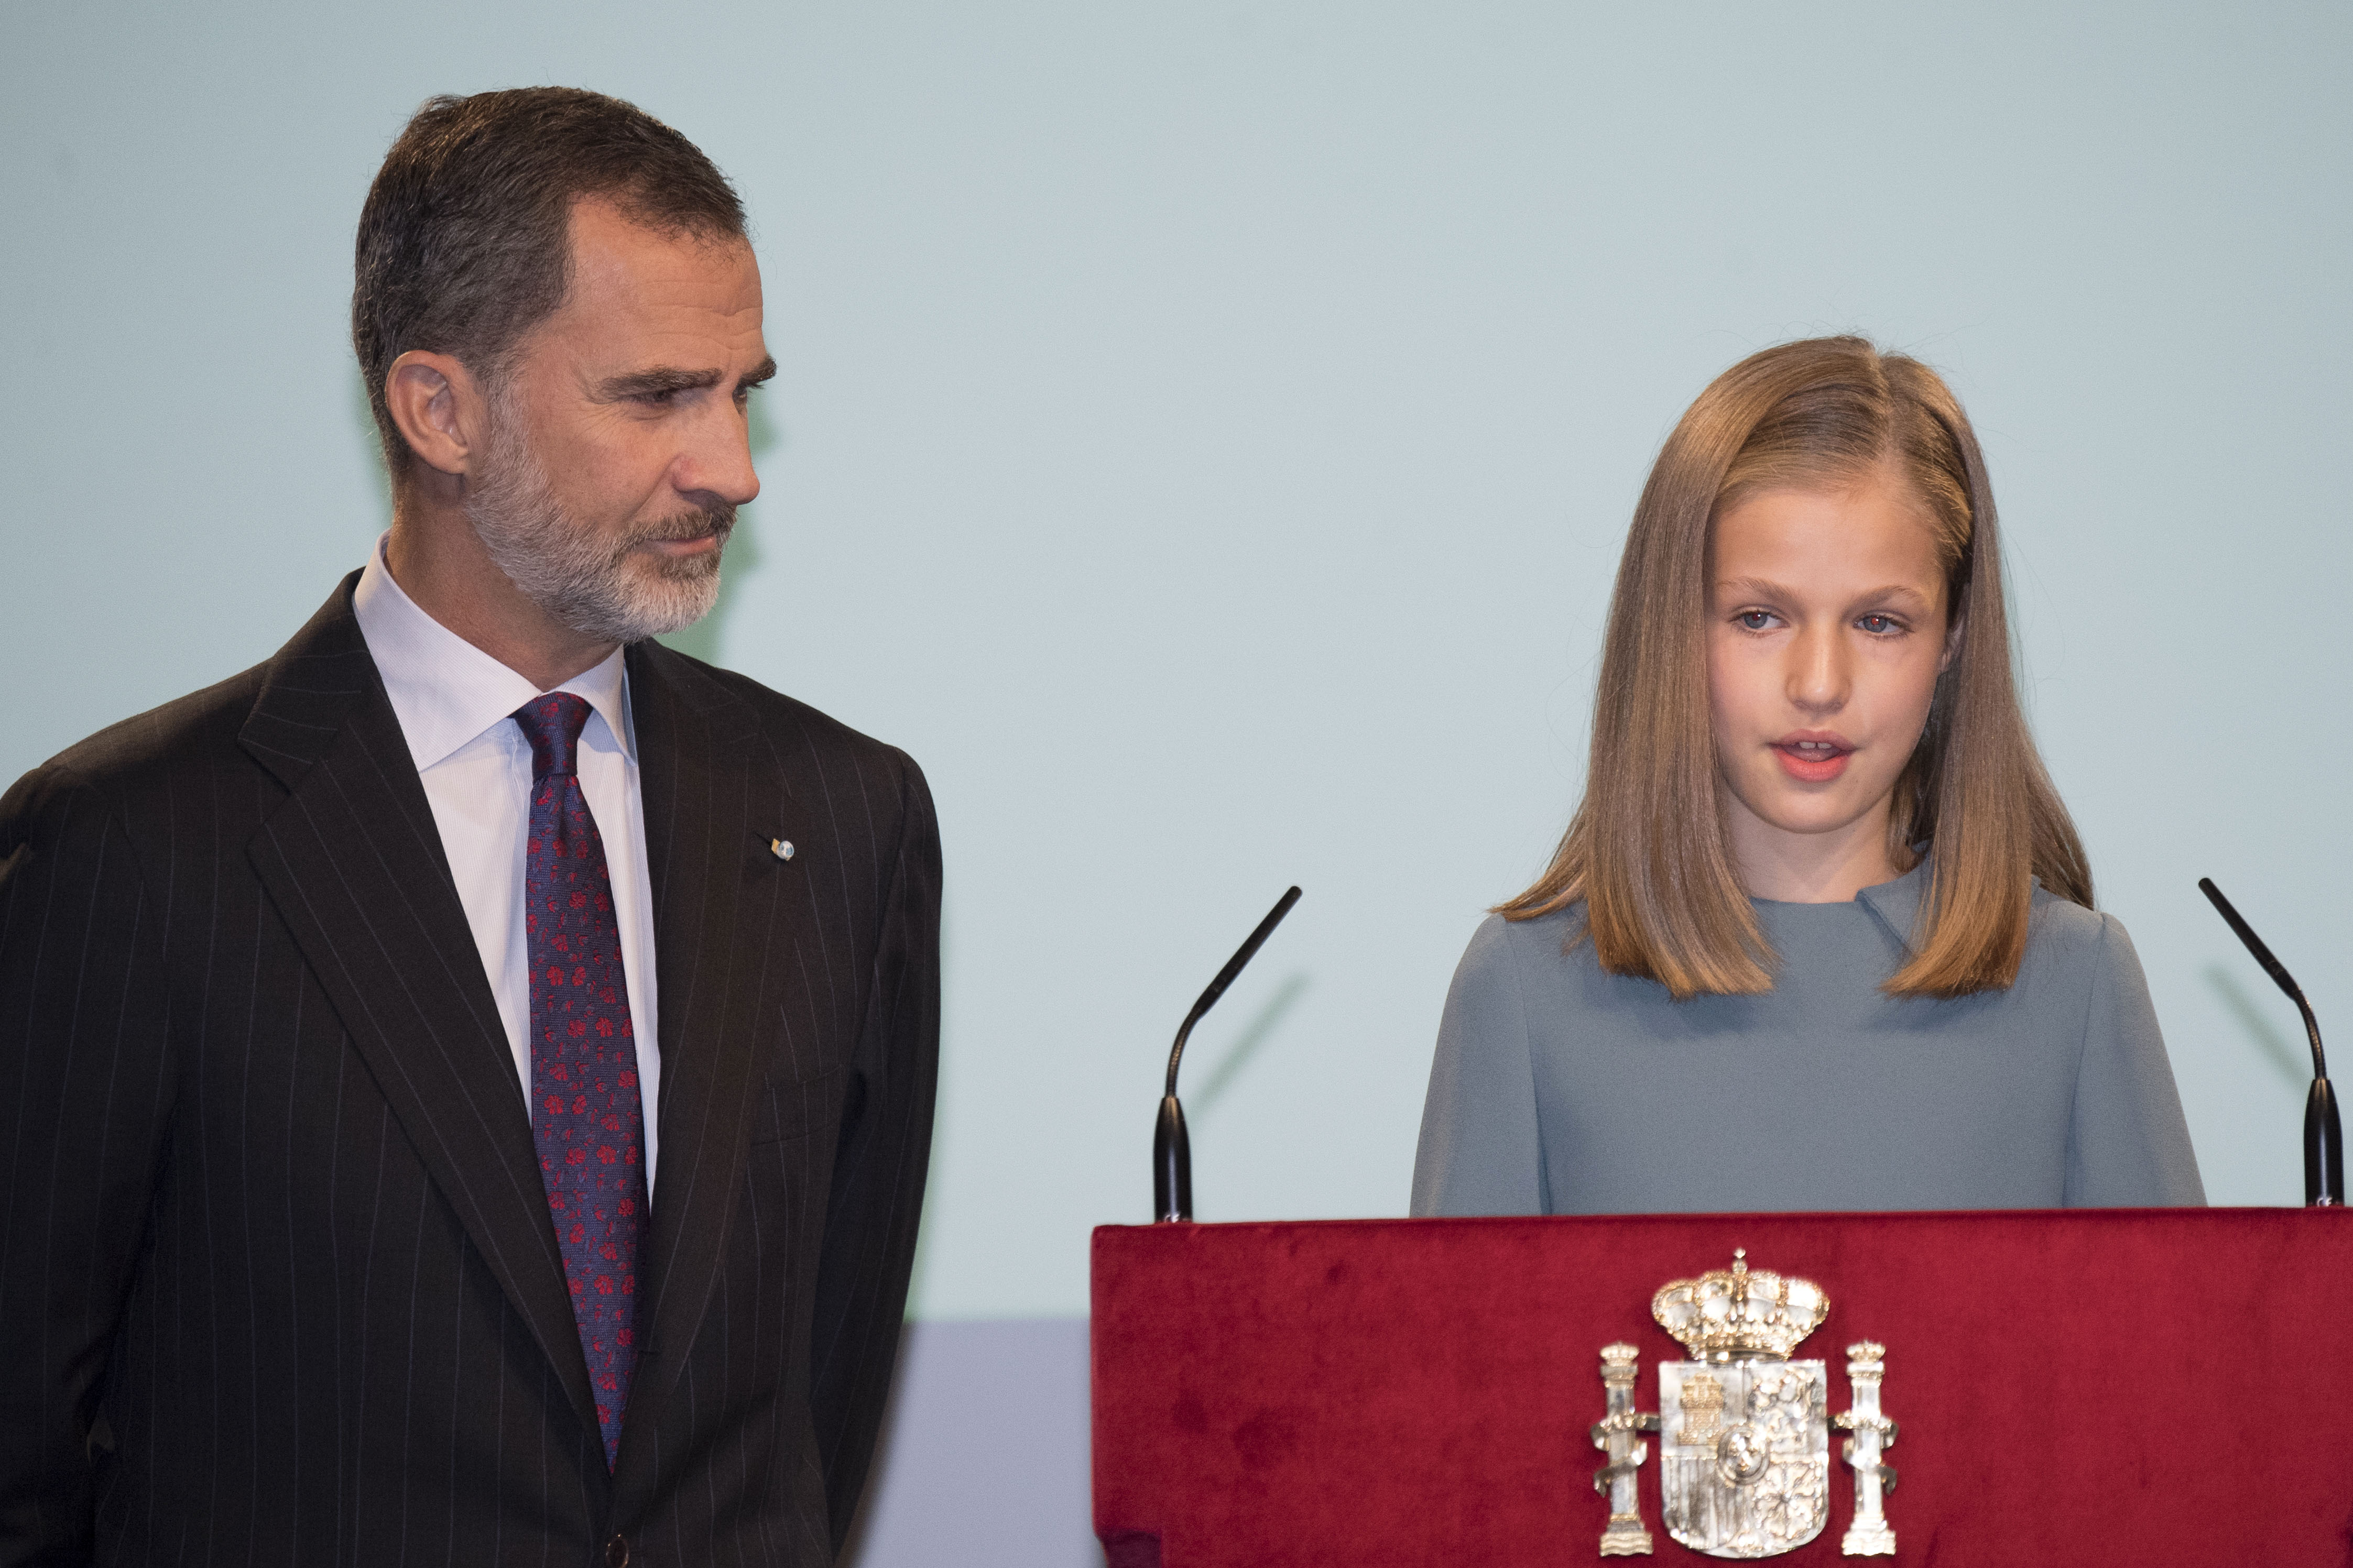 Először beszélt a nyilvánosság előtt a spanyol trón örököse, a 13 éves Leonóra hercegnő